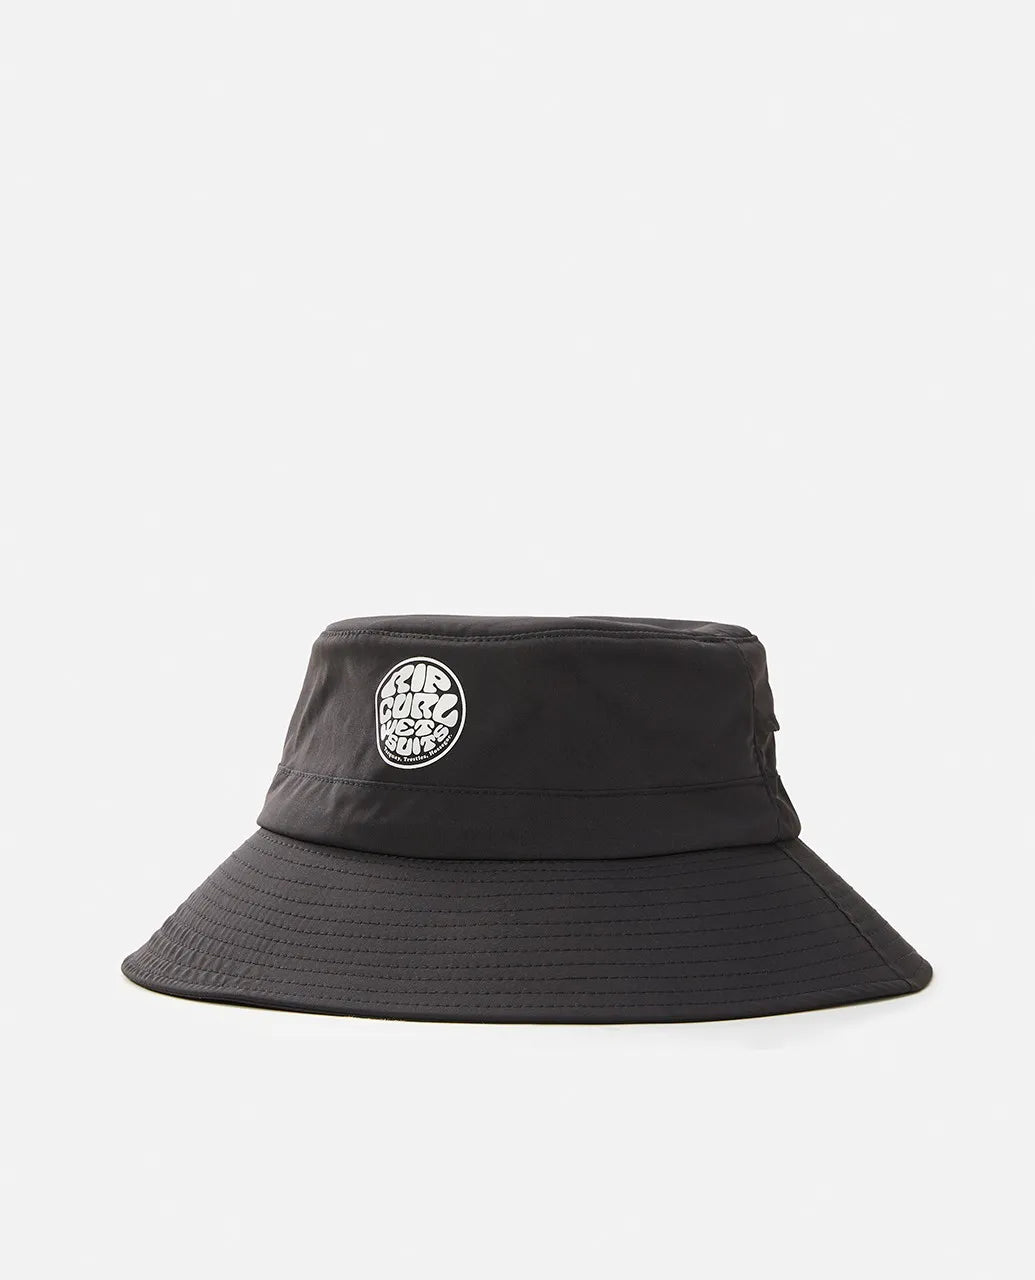 Ripcurl Surf Series Bucket Hat Hats Black L-XL